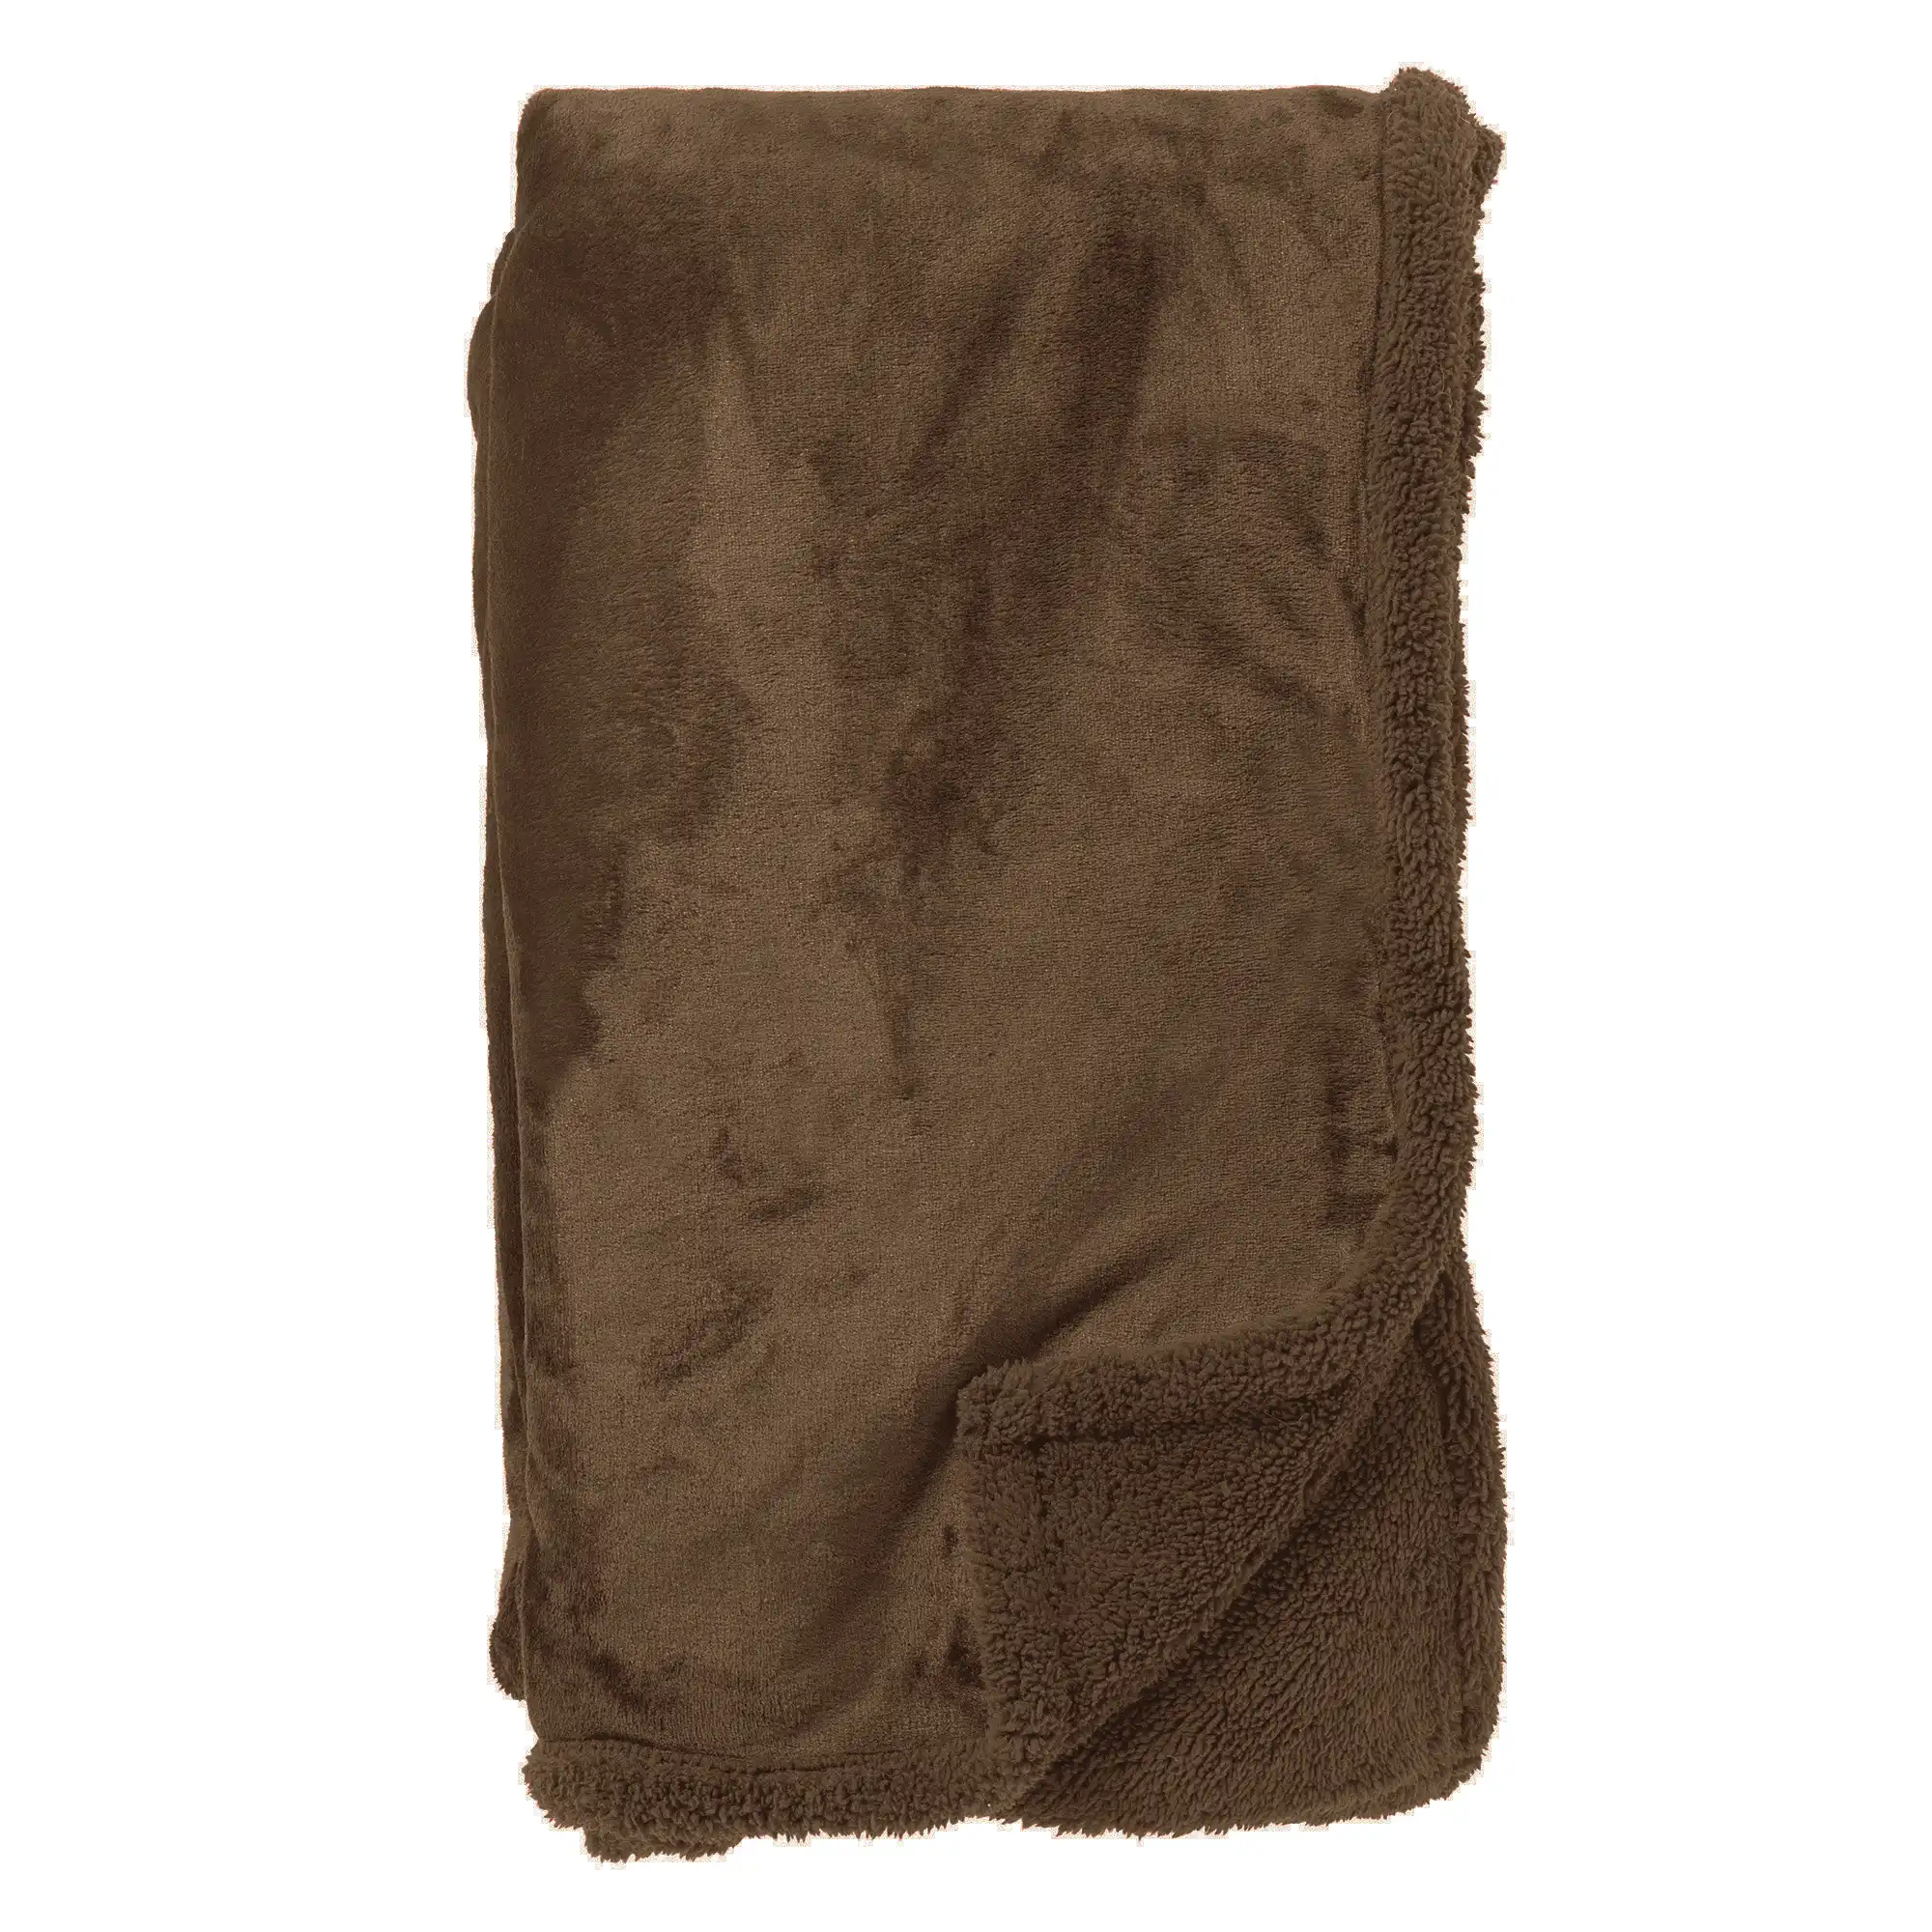 STANLEY - Plaid 150x200 cm - fleece deken met teddy en fleece - Chocolate Martini - bruin